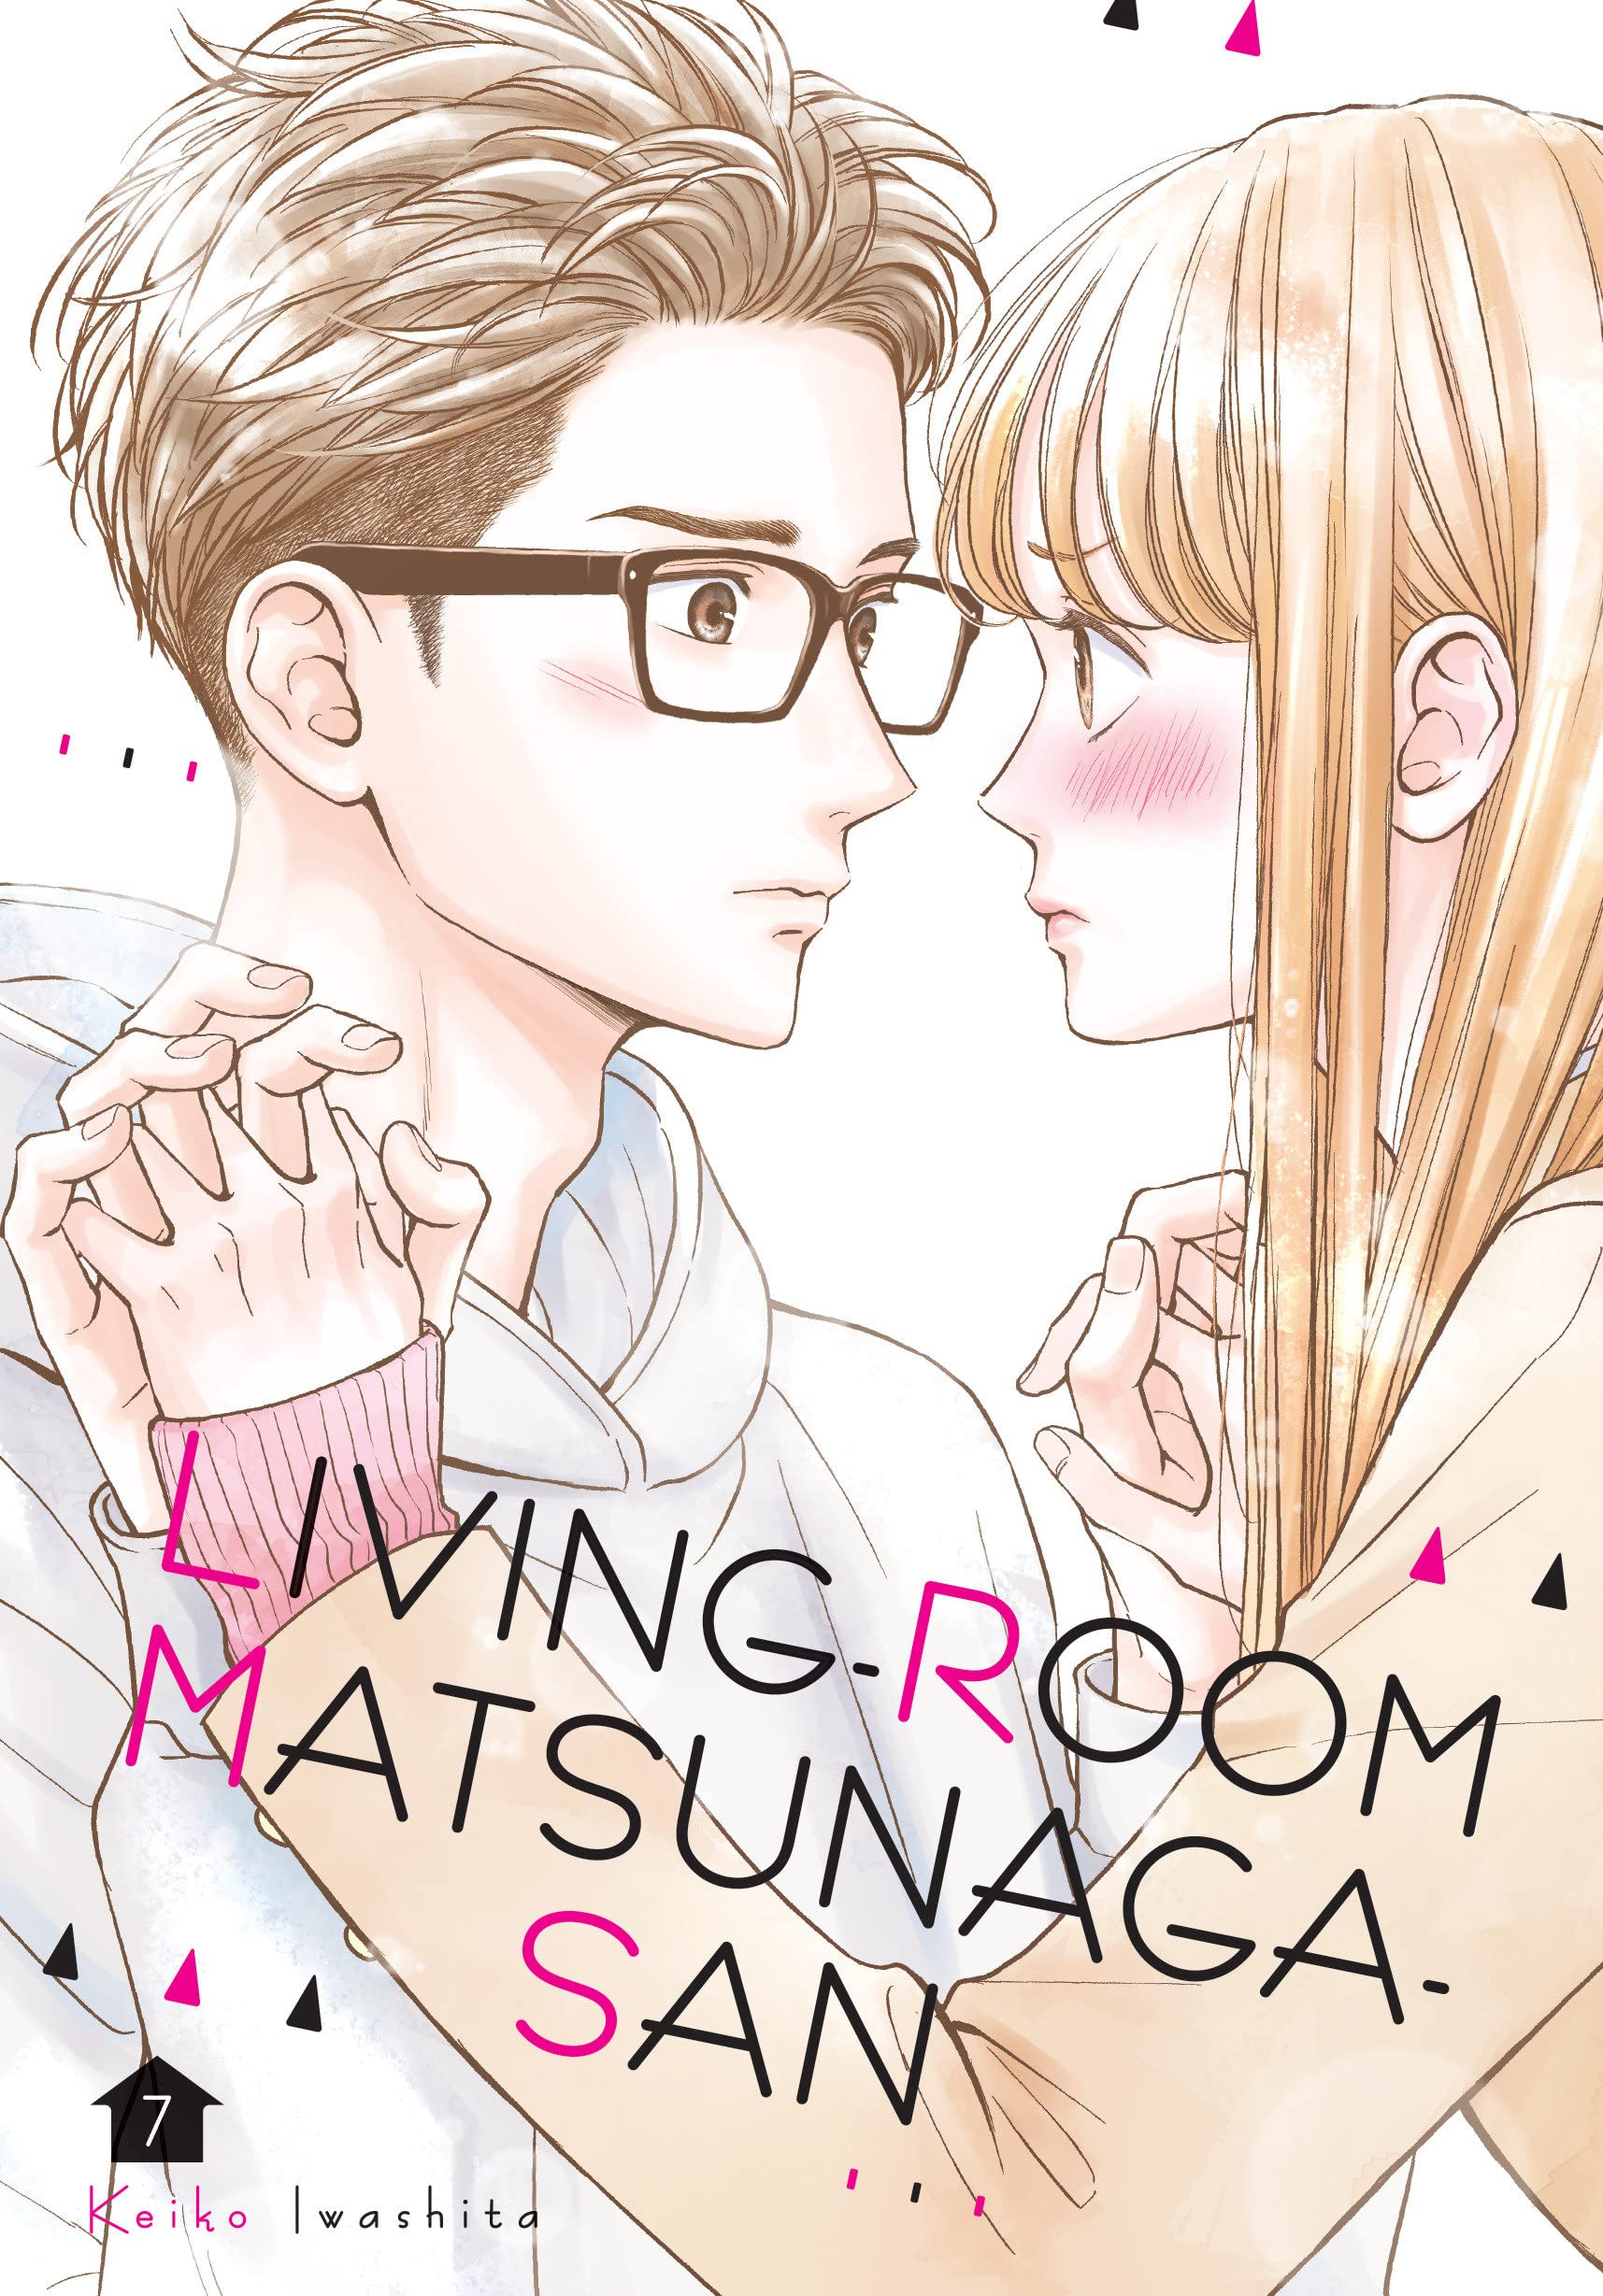 Living-Room Matsunaga-san - Volume 7 | Keiko Iwashita